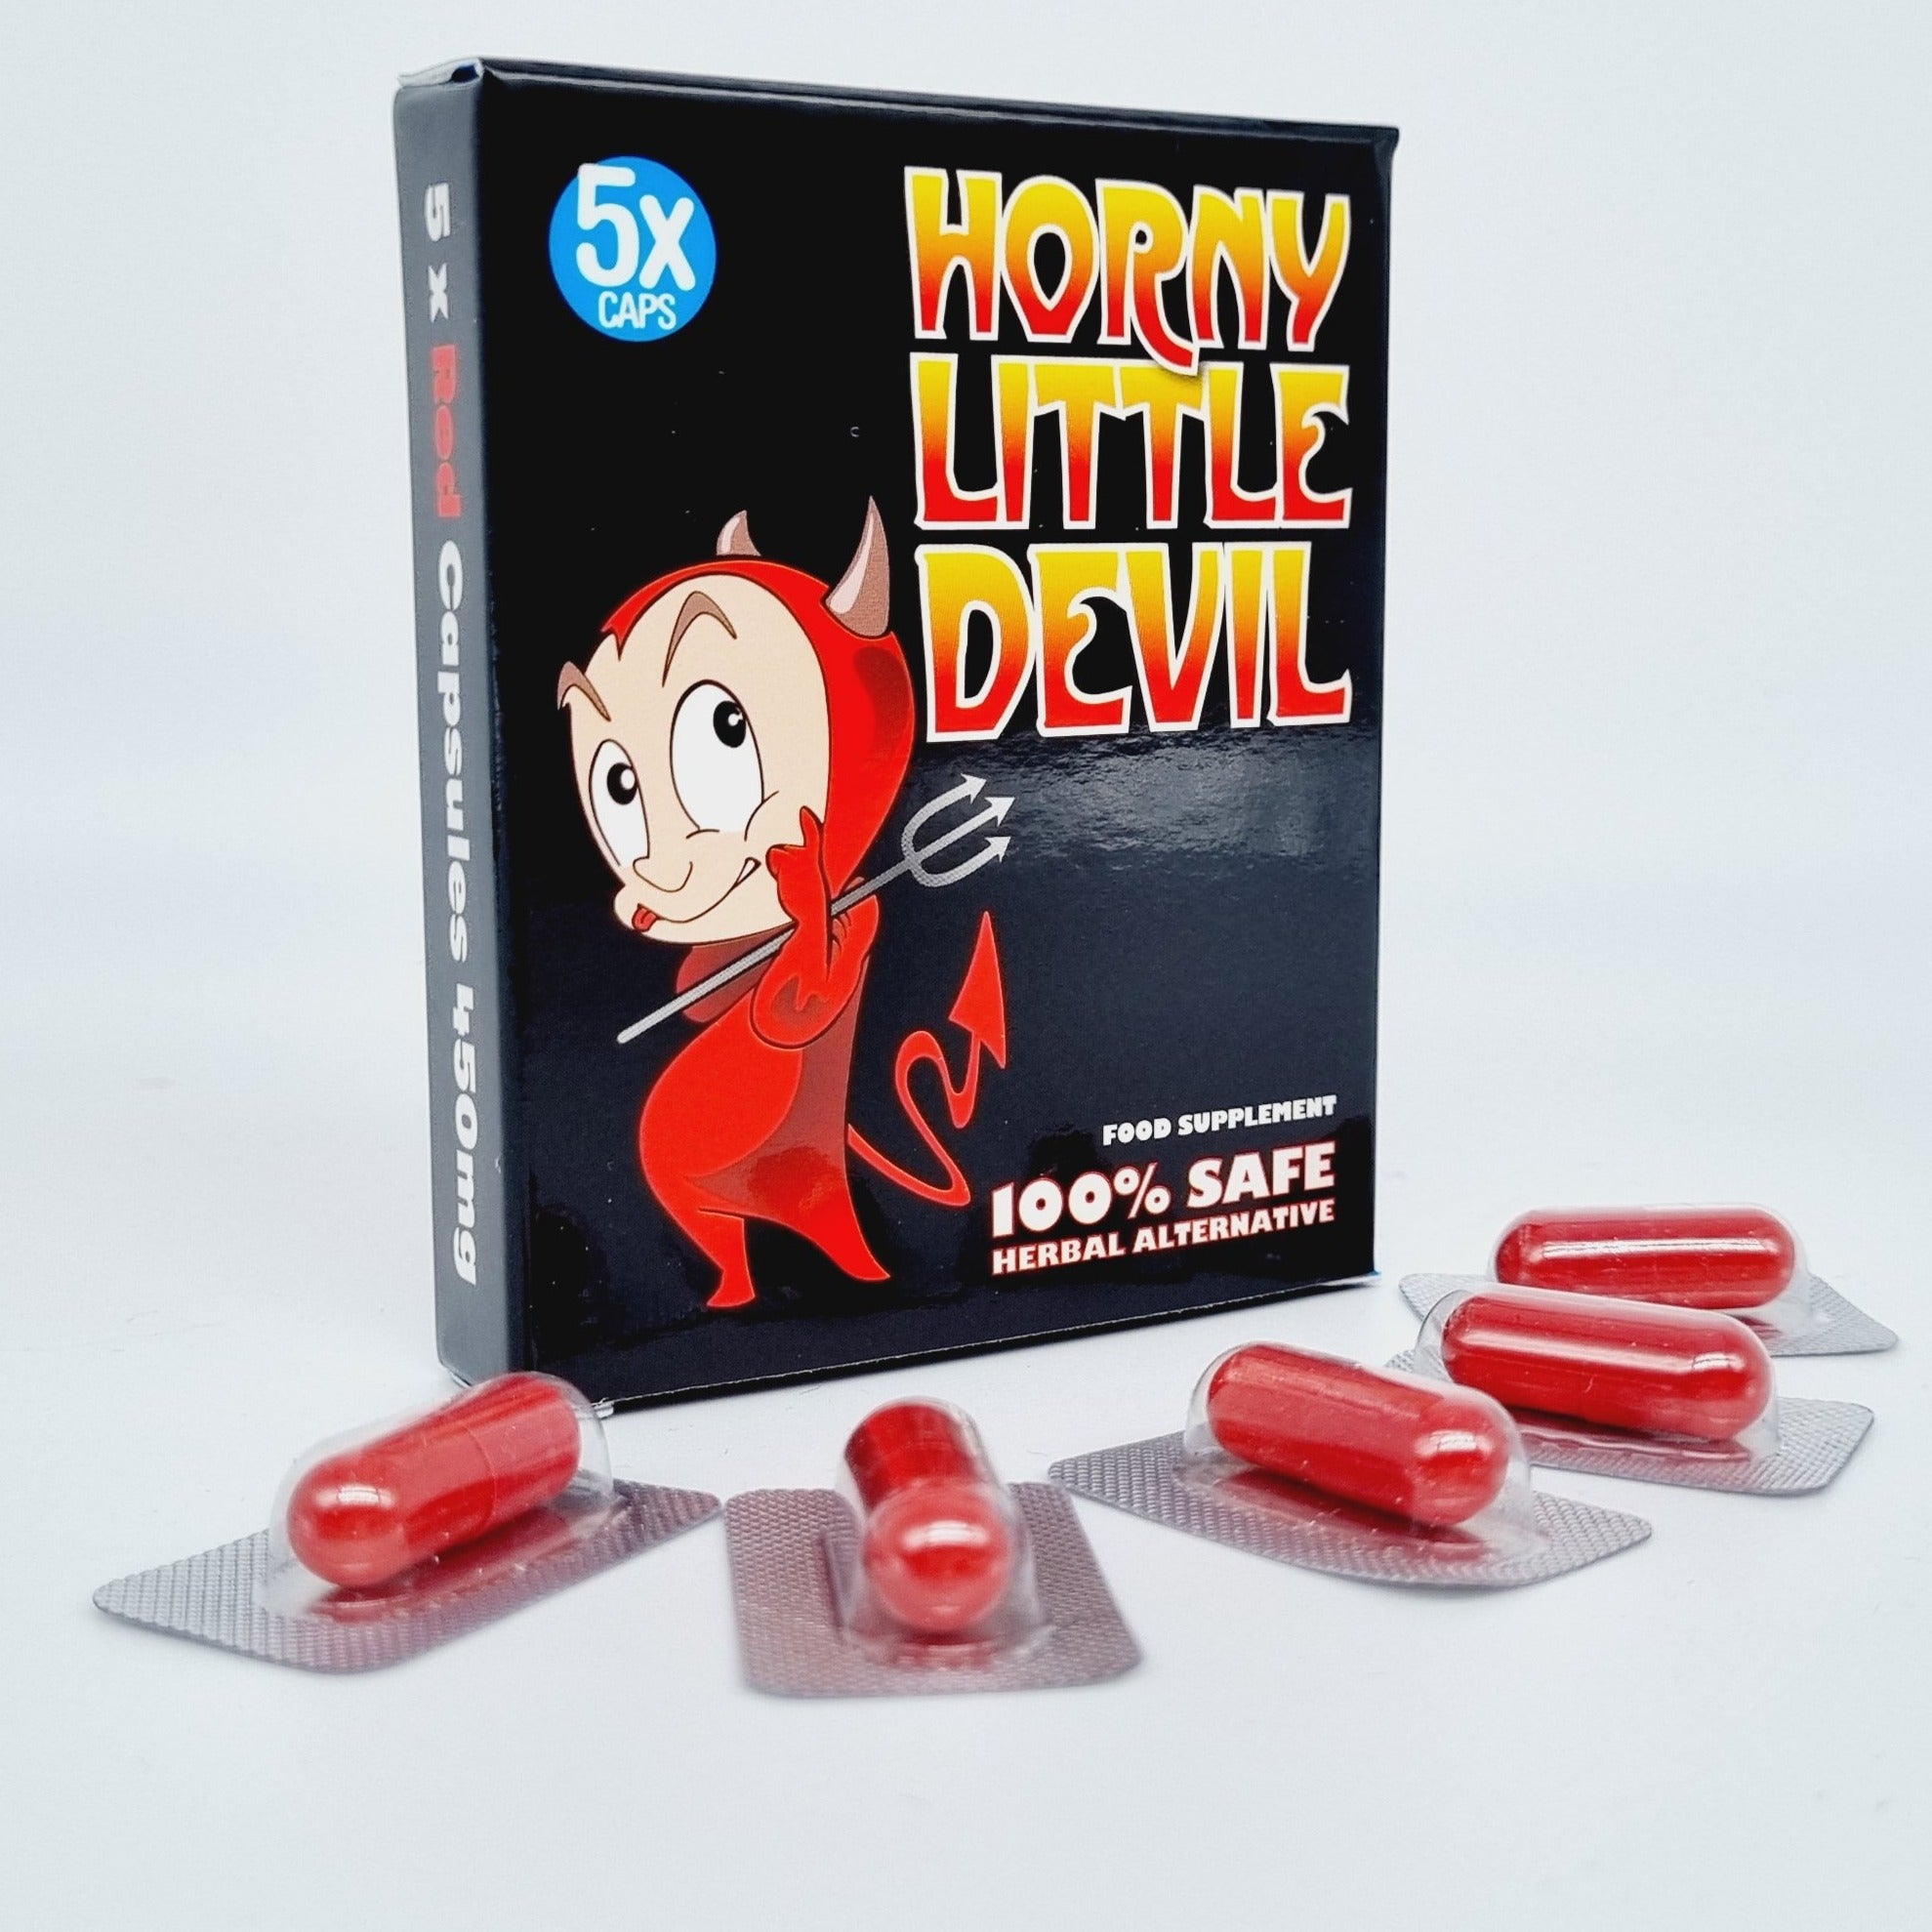 Horny Little Devil X5